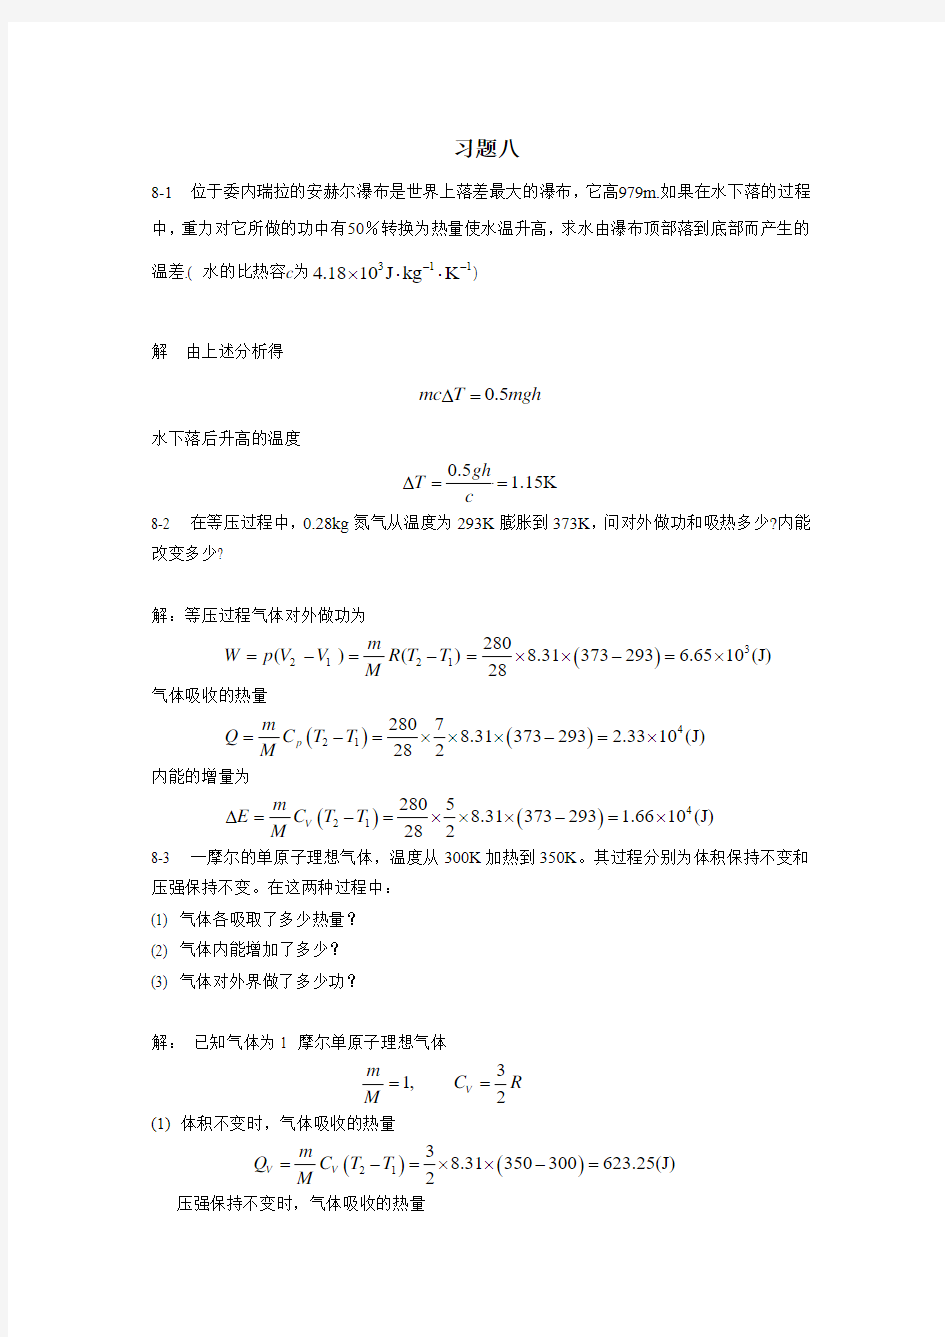 新编基础物理学王少杰第二版第八章习题解答